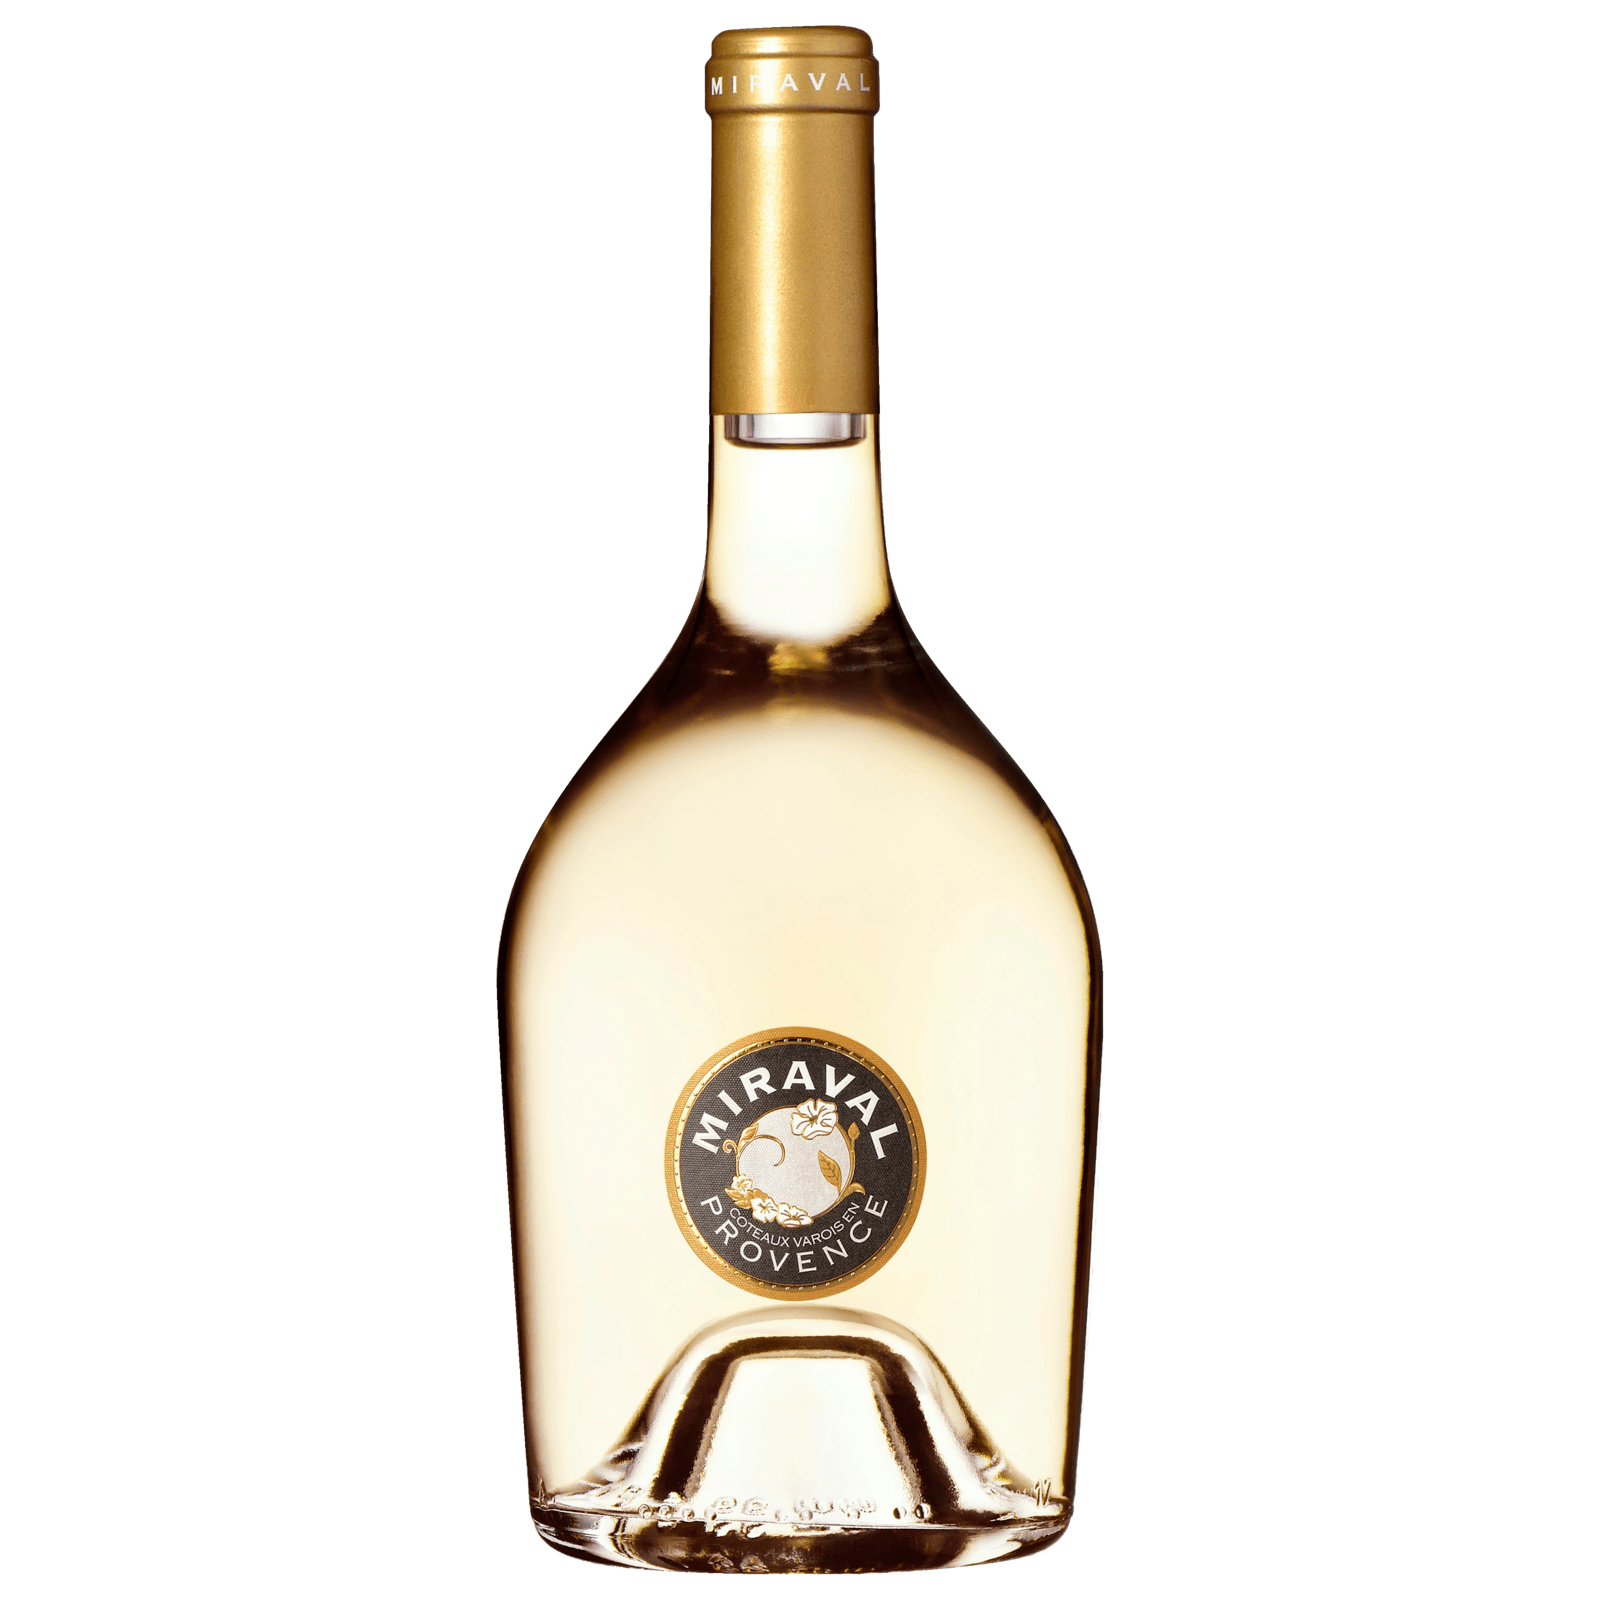 Irrepetible Manchuela DO trocken, Lidl 3,99€ für 2020 Weißwein von